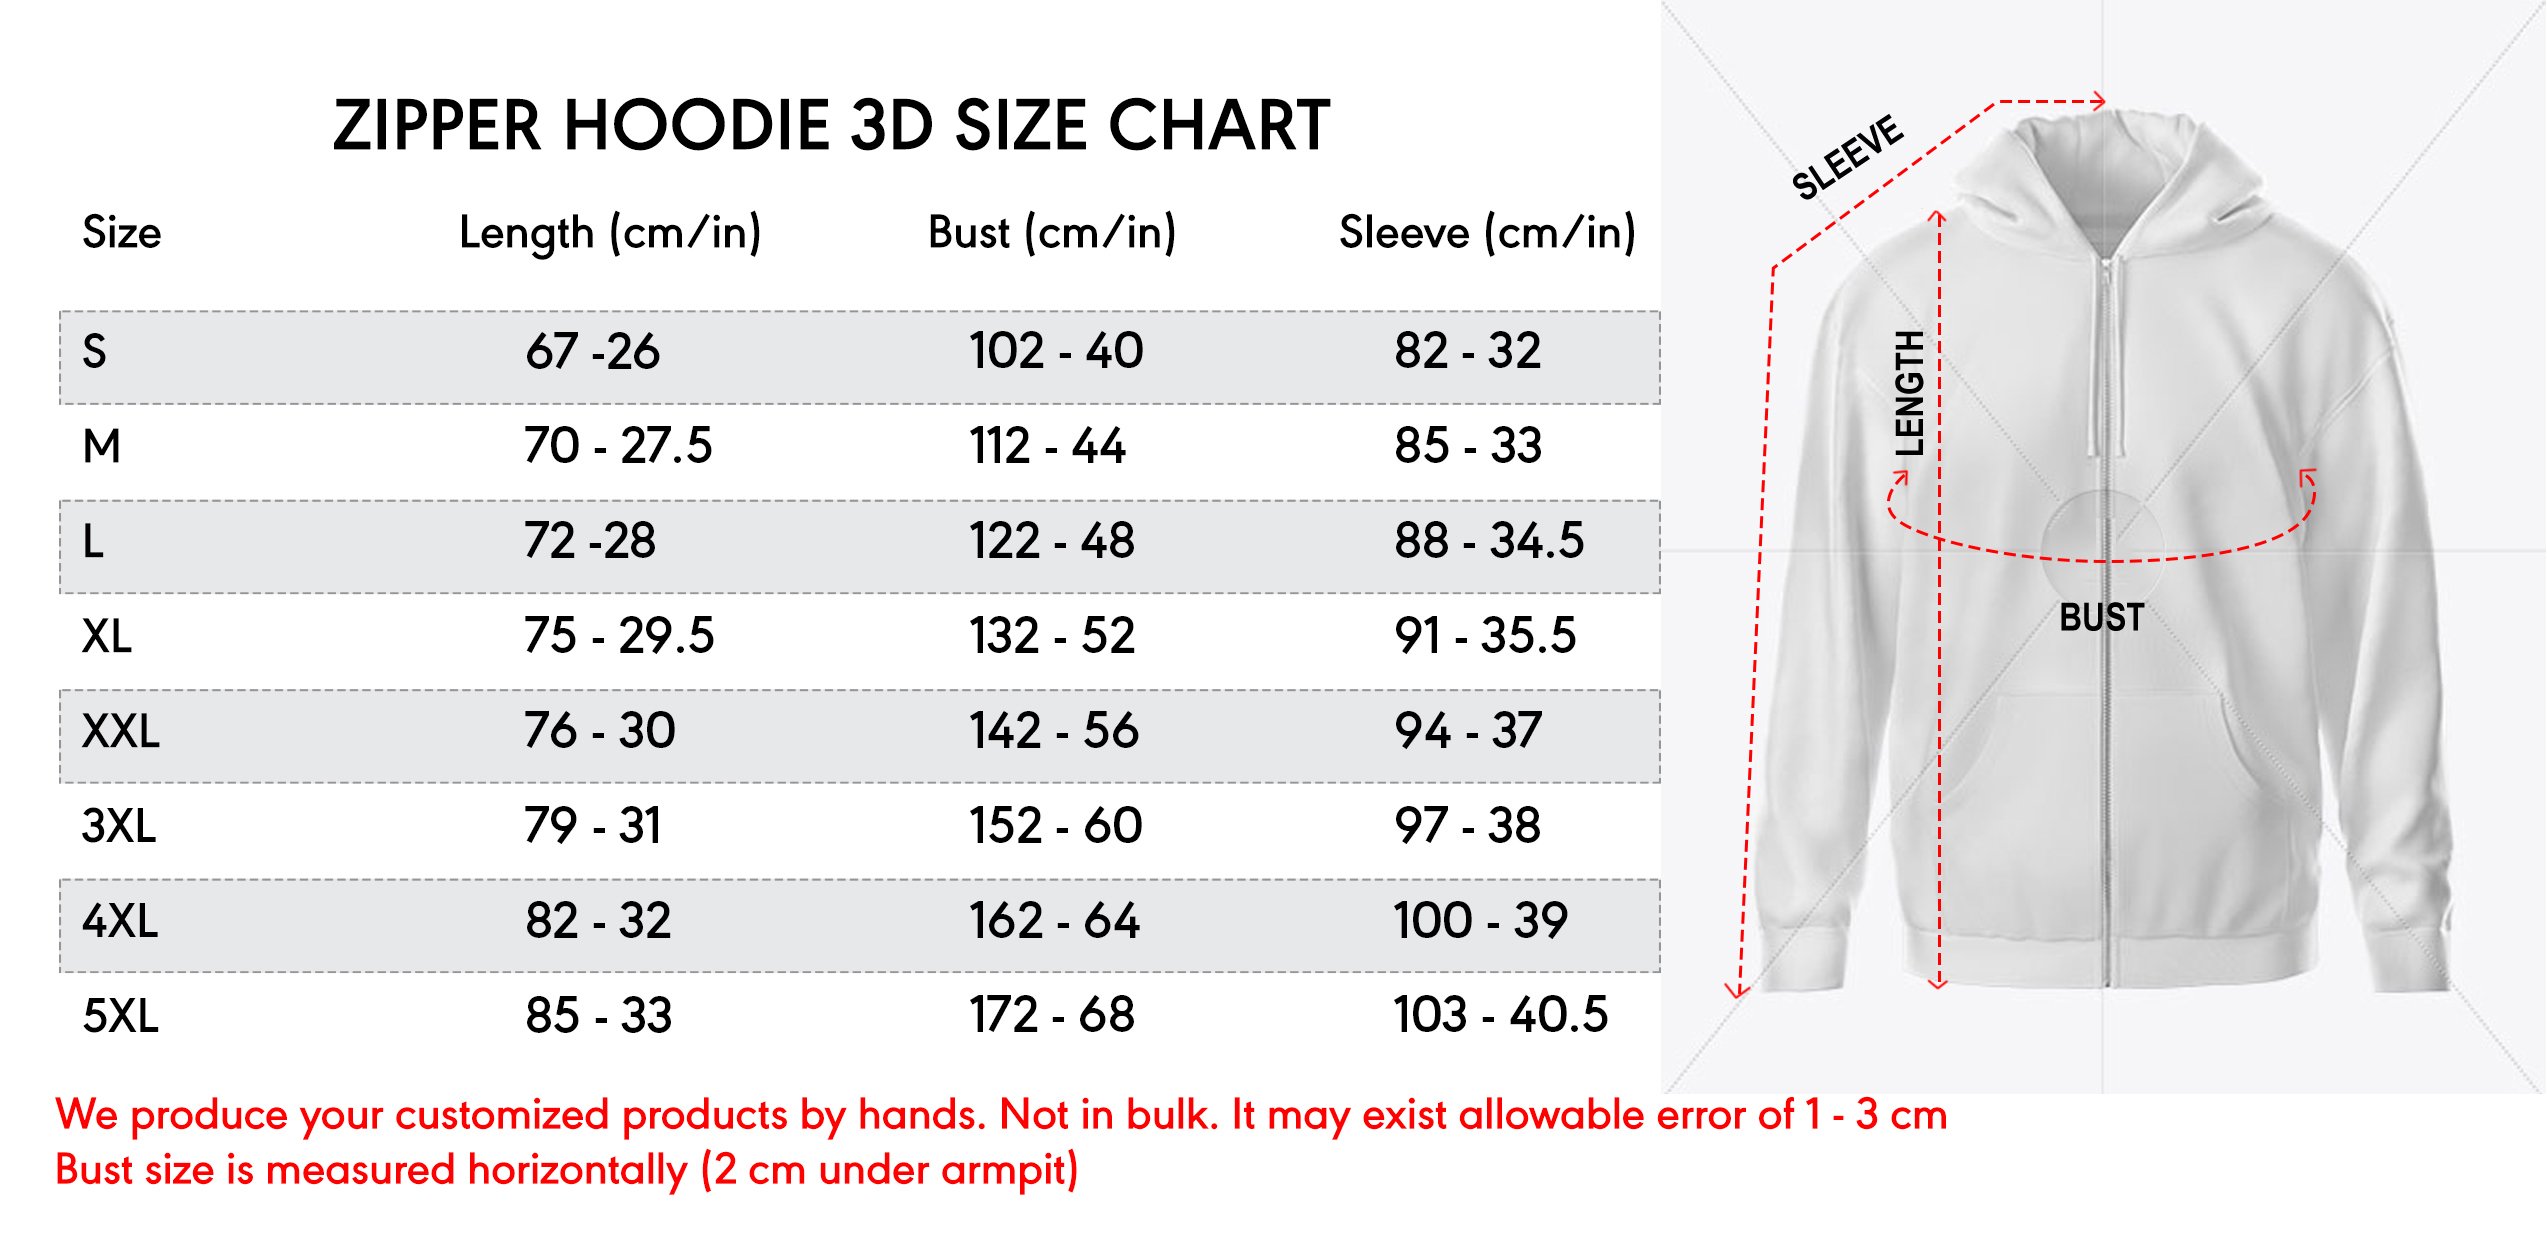 zip hoodie 3d size chart 21 10 20